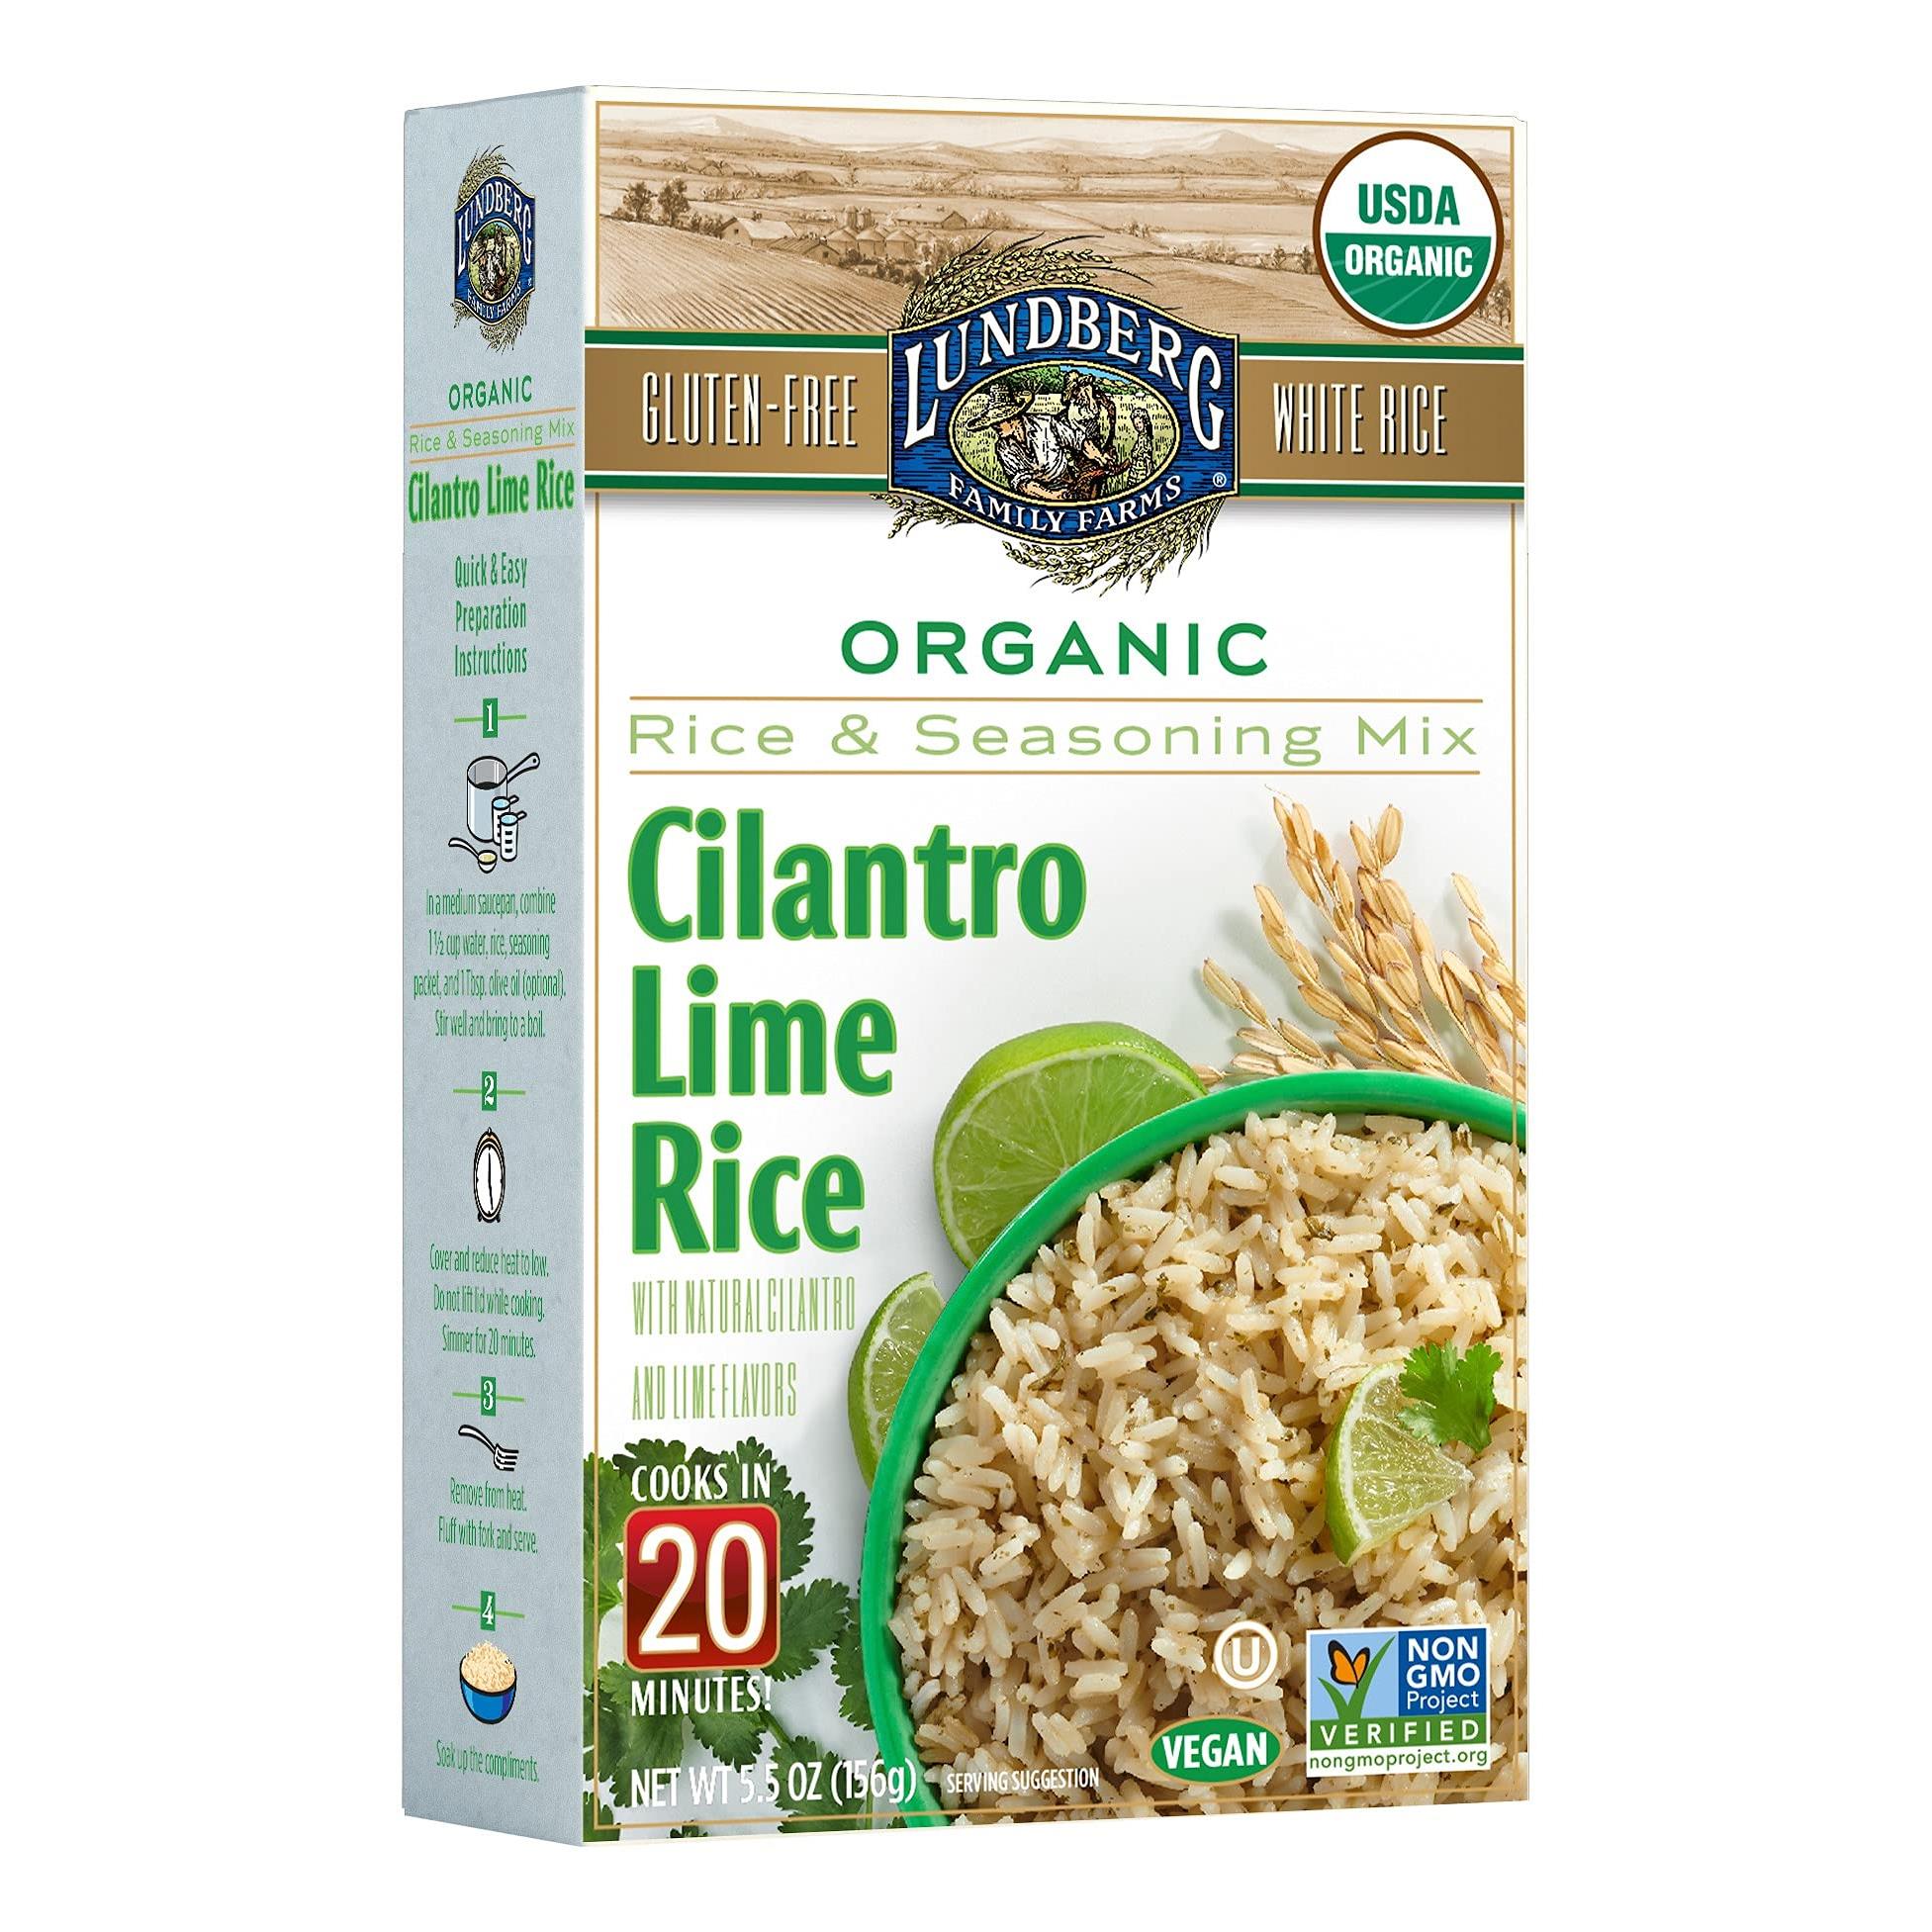 Lundberg Organic White Rice Entree, Cilantro Lime, 5.5oz, Gluten-Free, Vegan, USDA Certified Organic, Non-GMO Verified, Kosher; 20 Minute Cook Time